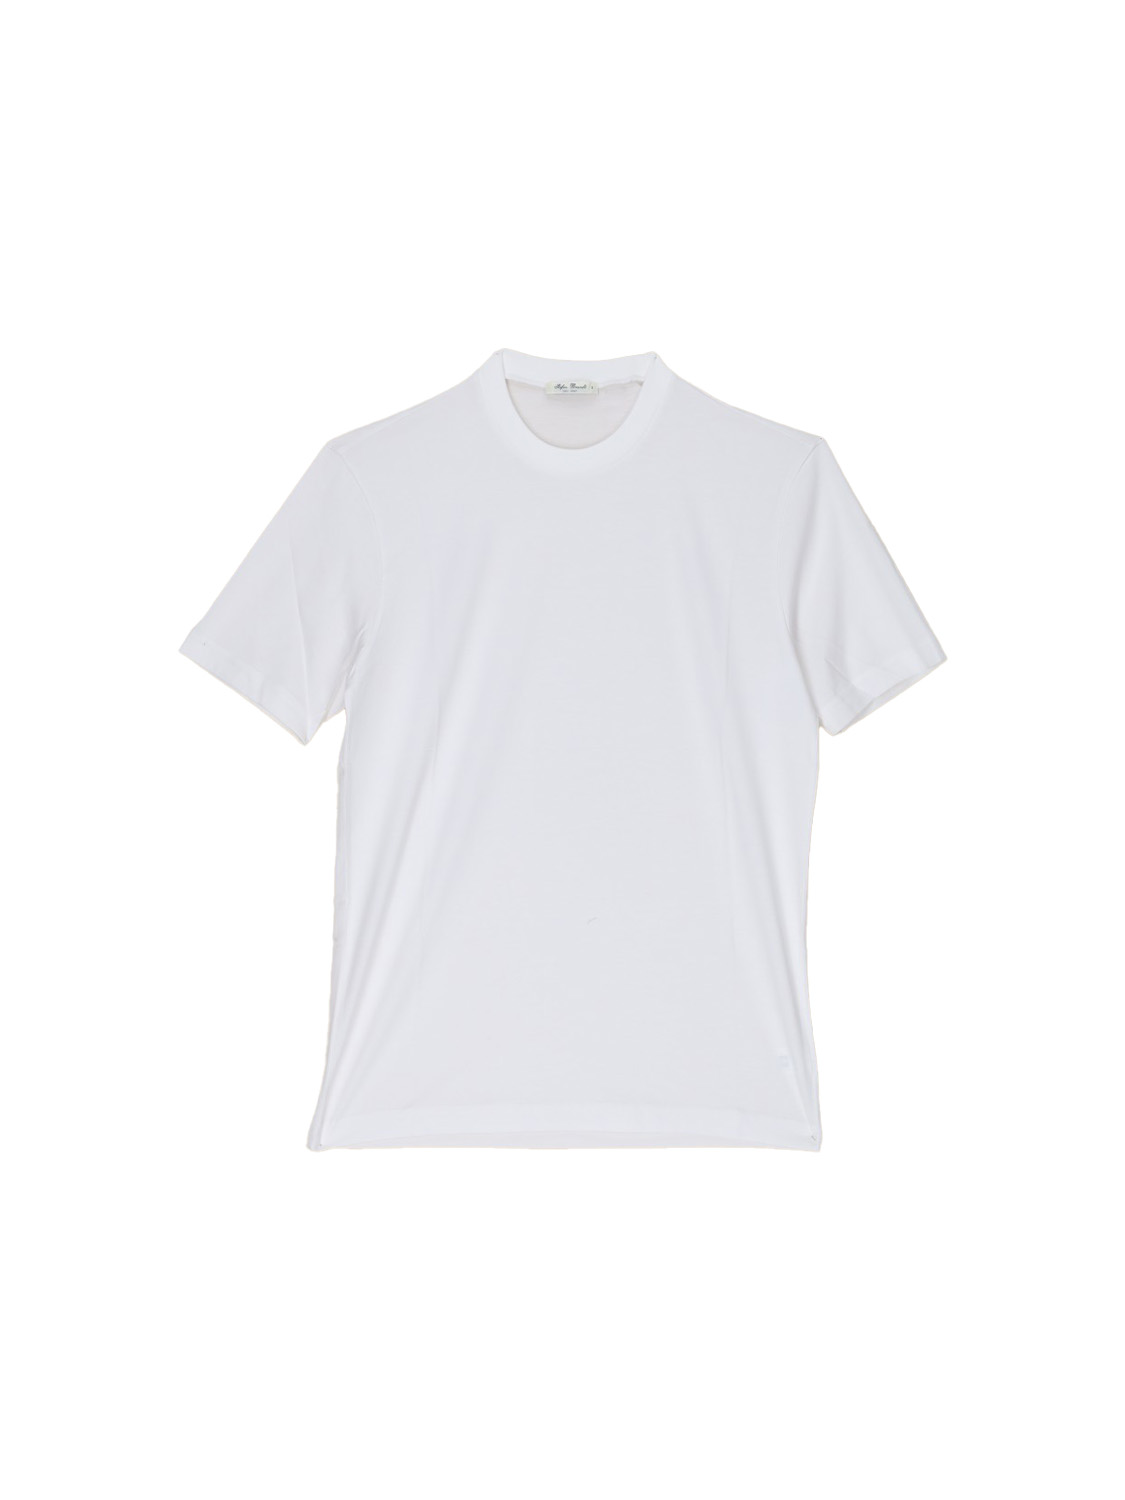 Stefan Brandt Eli 30 – Crew Neck T-Shirt aus Baumwolle weiß XL